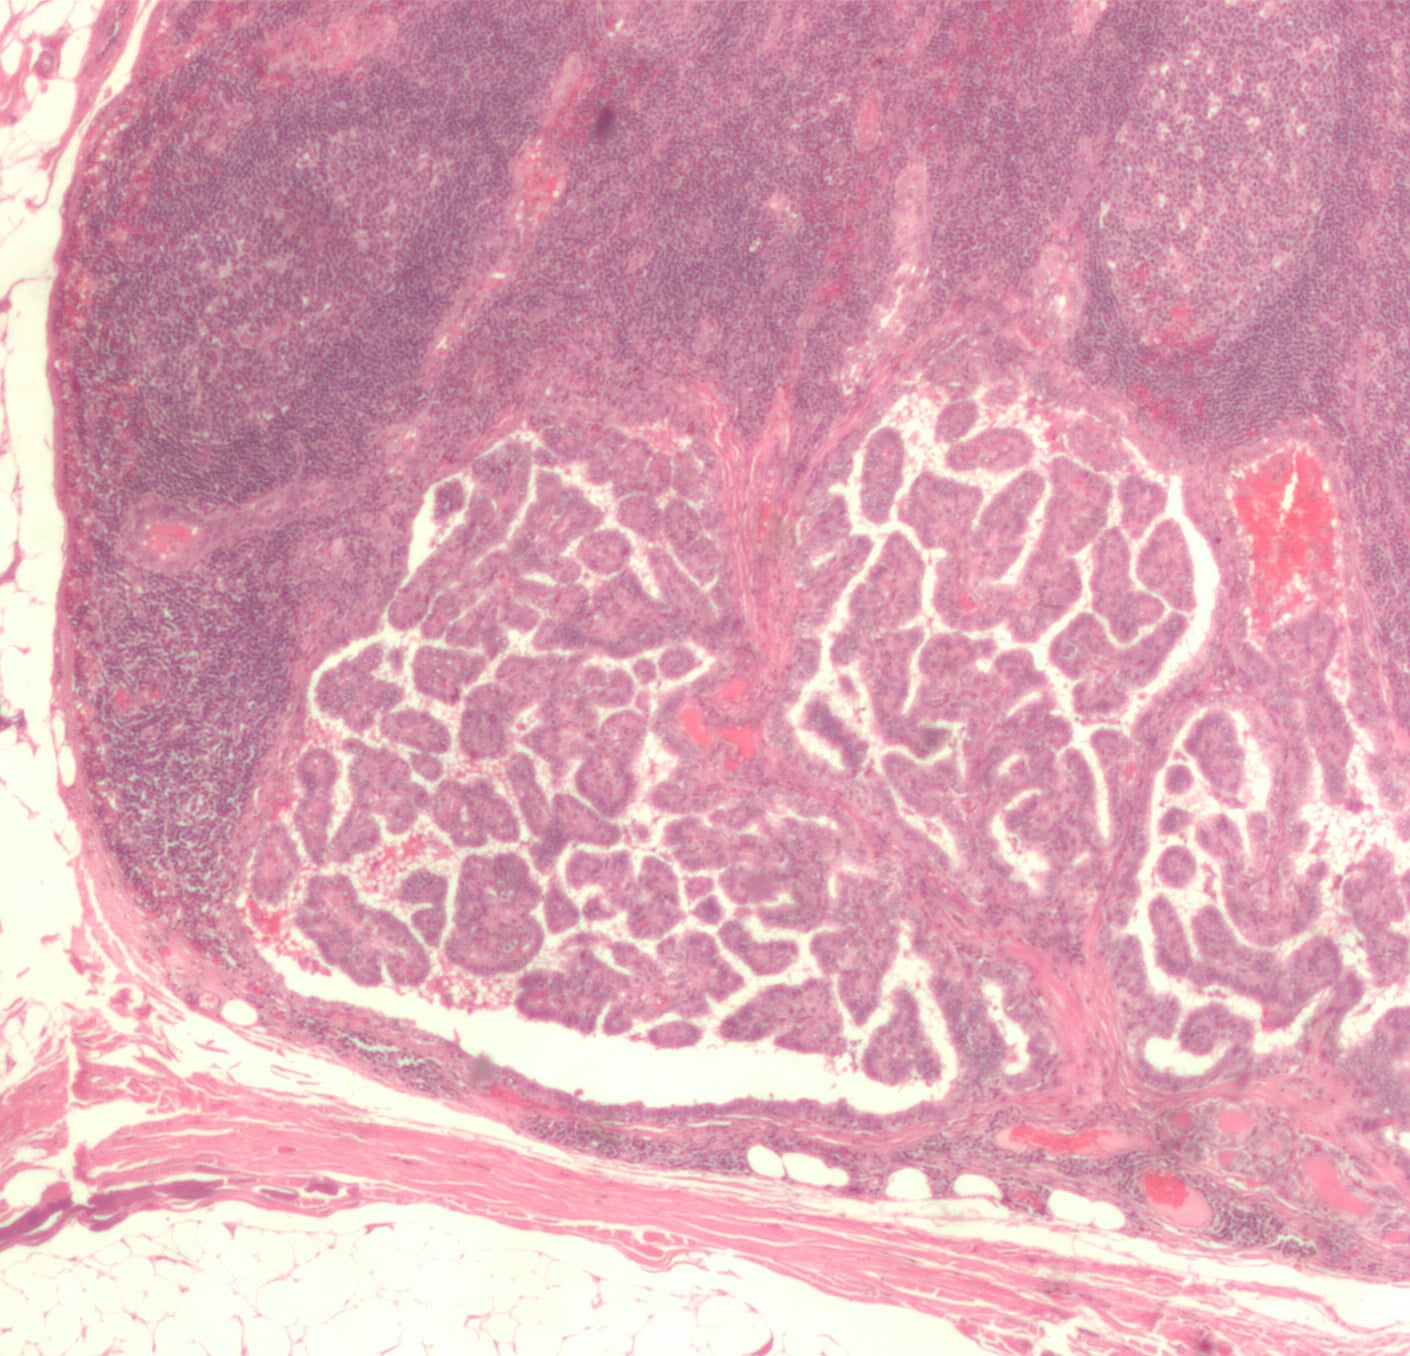 Микрограф рака щитовидной железы / ©Wikipedia